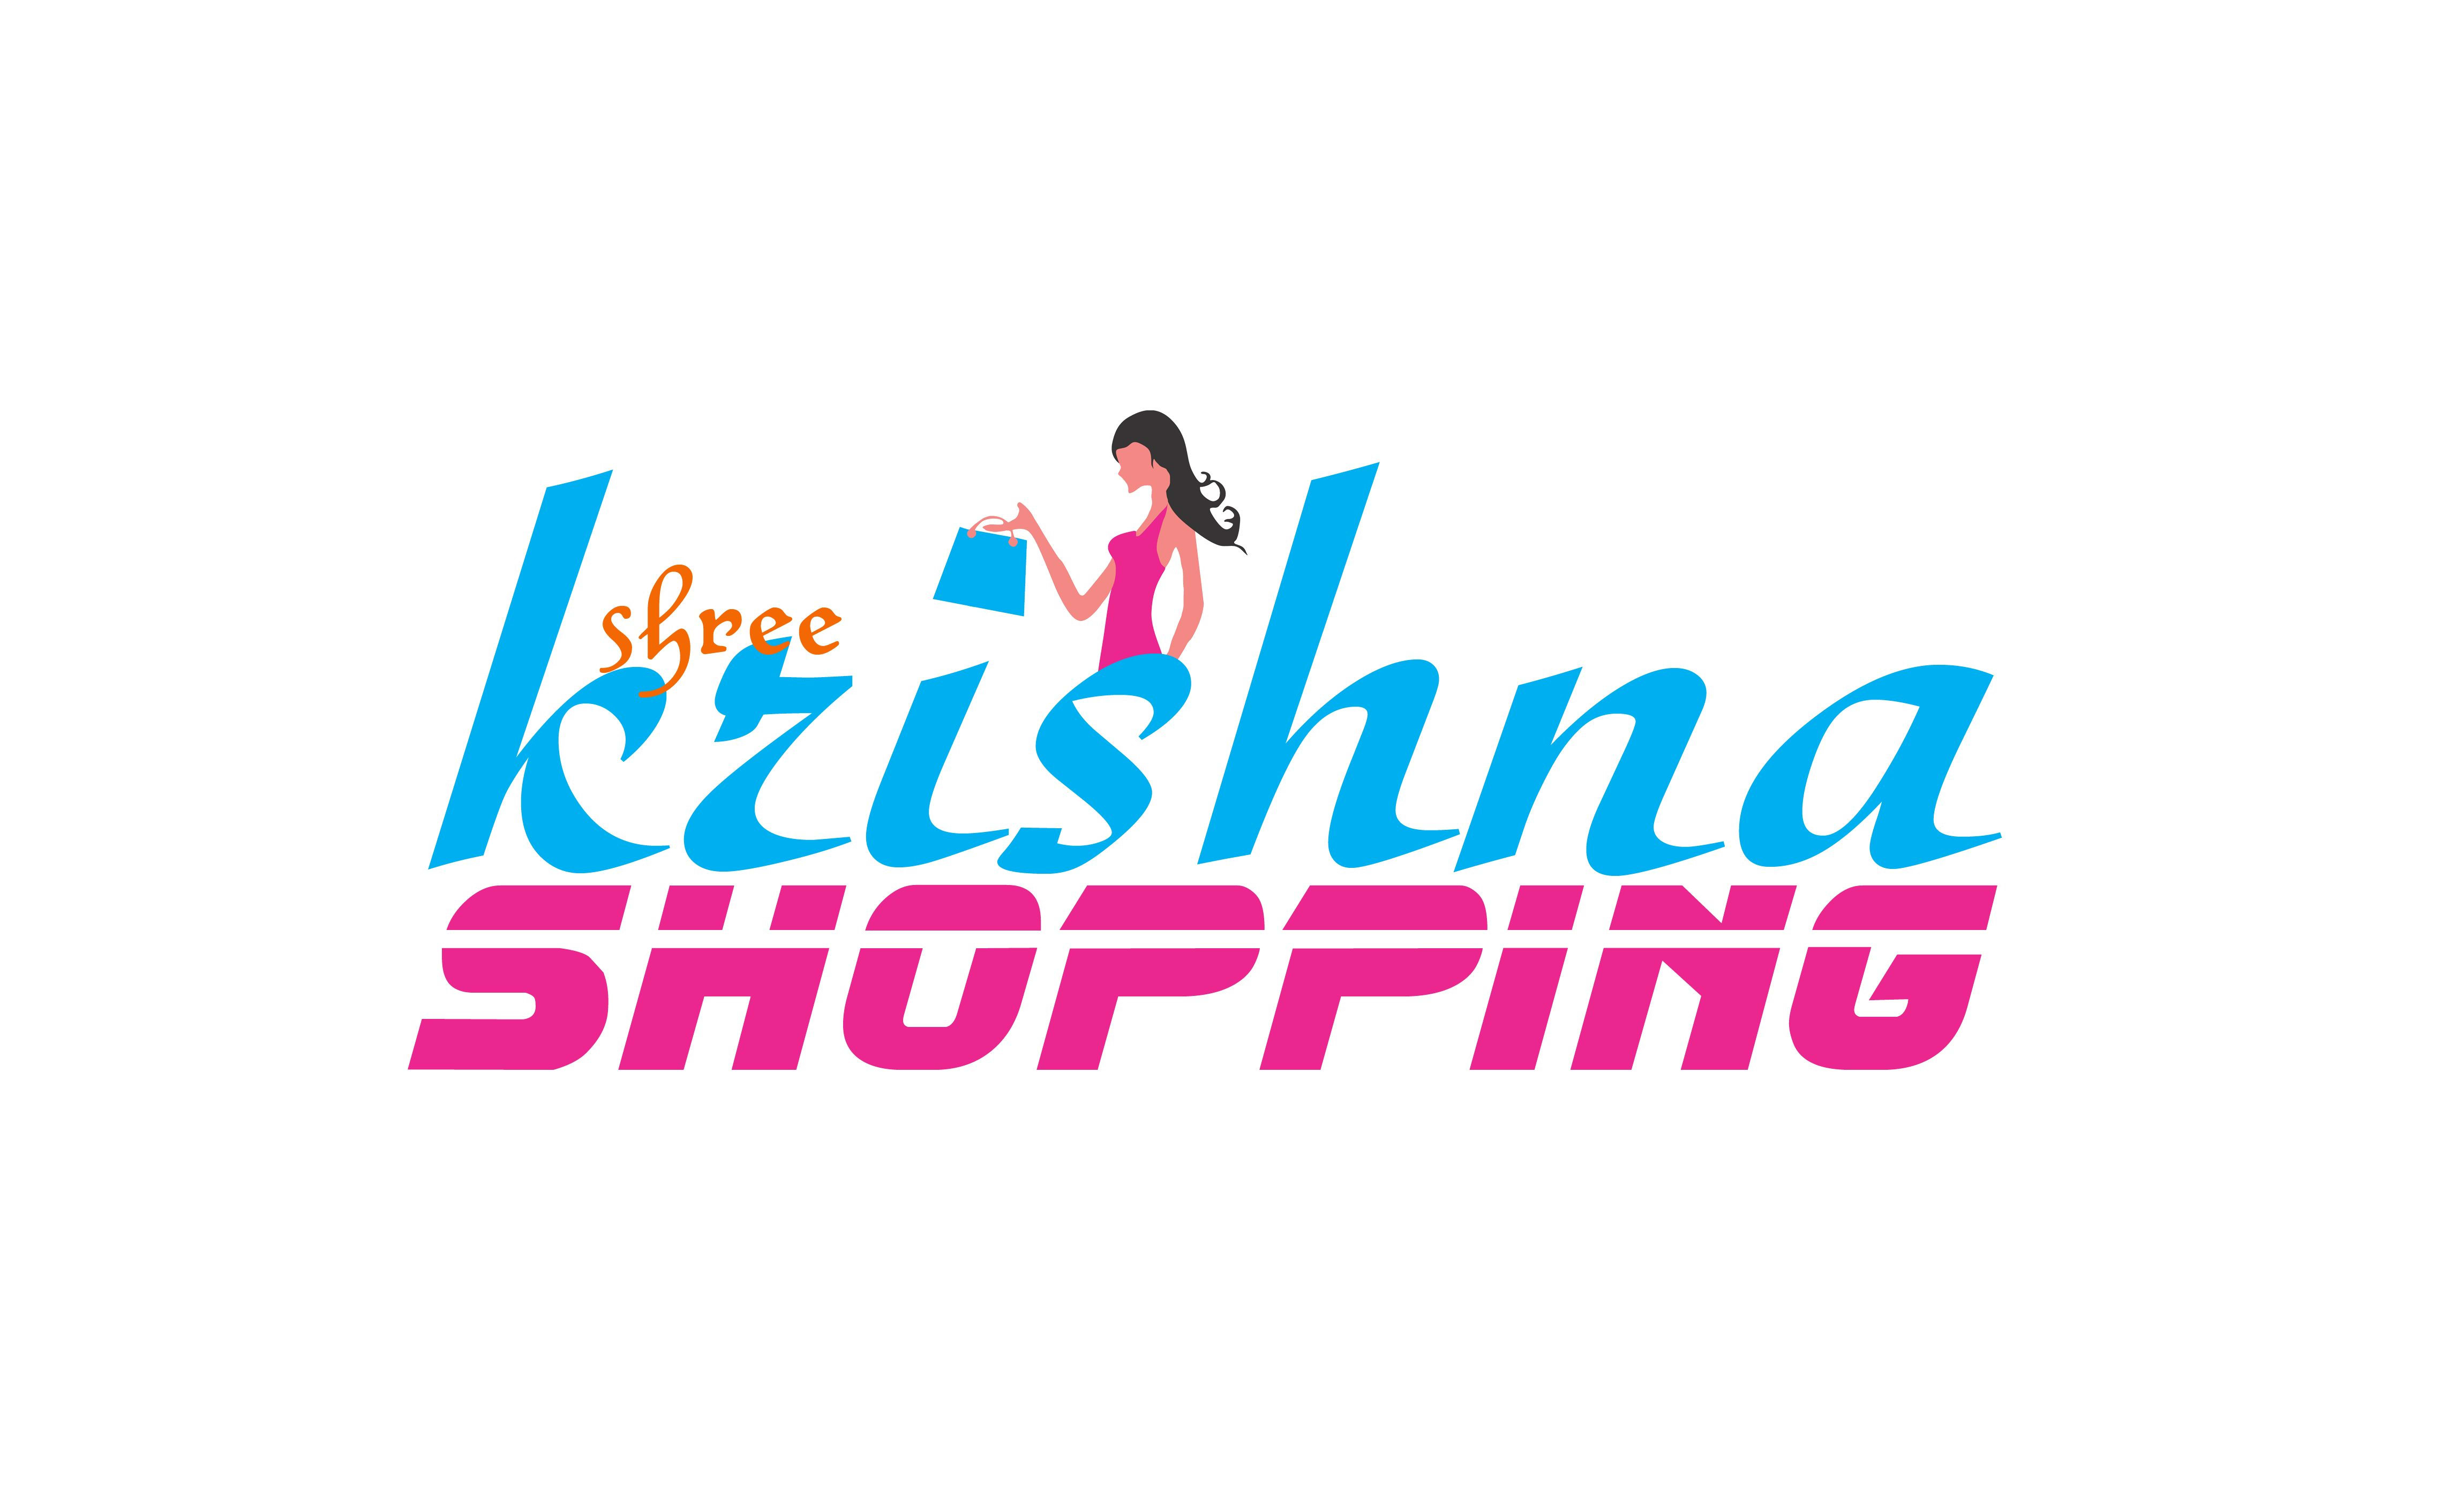 Shree Krishna Shopping